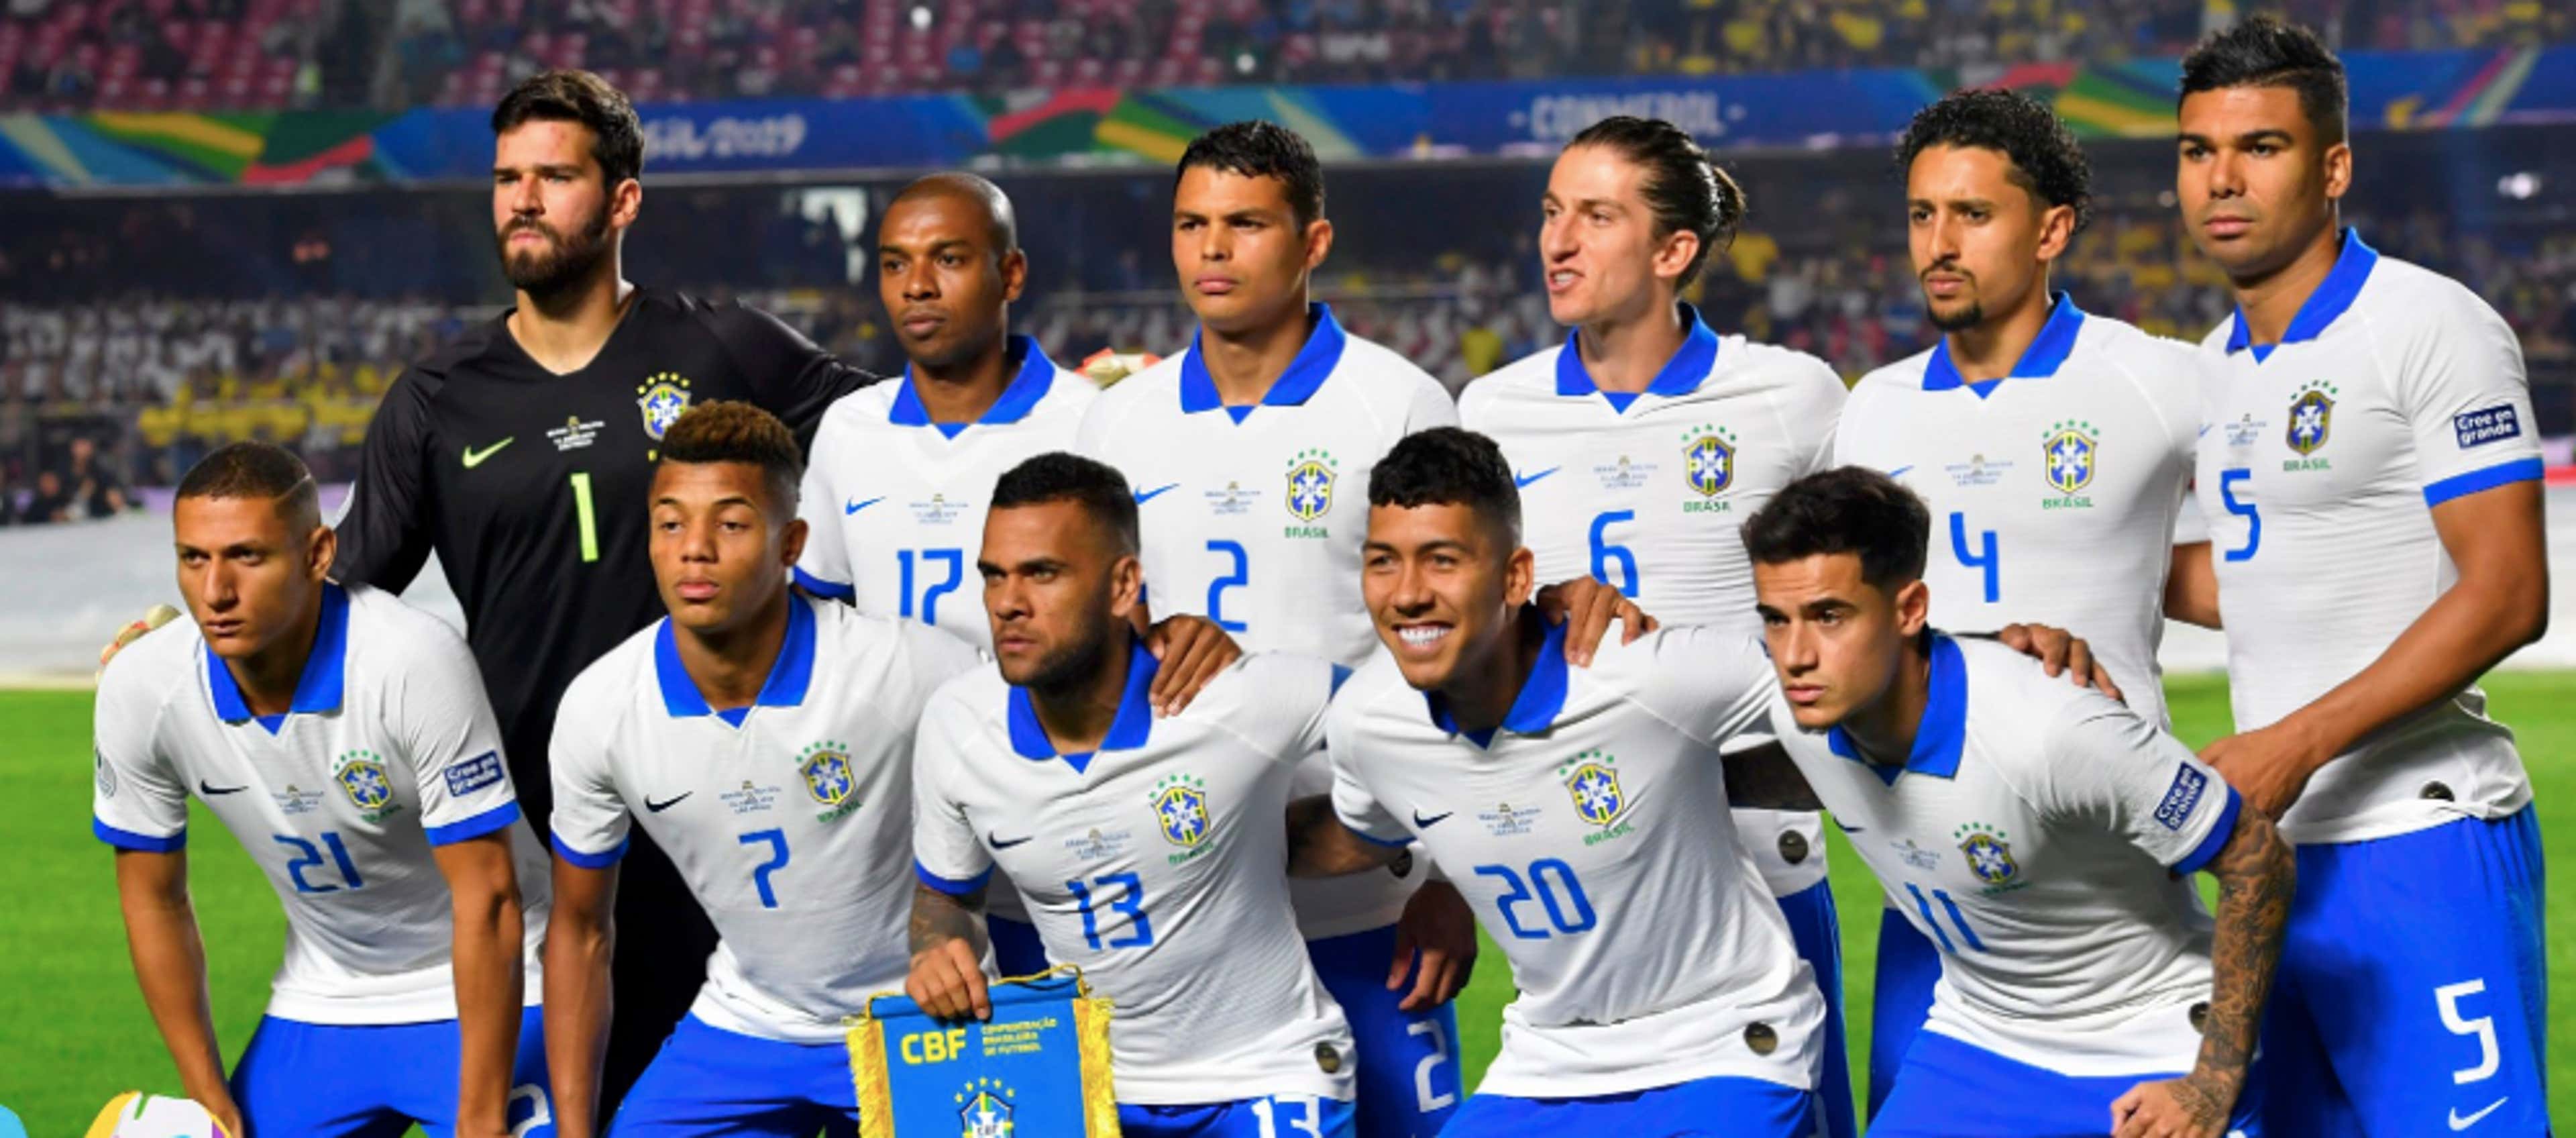 Camiseta de Brasil para la Copa América 2019, Selecciones Nacionales